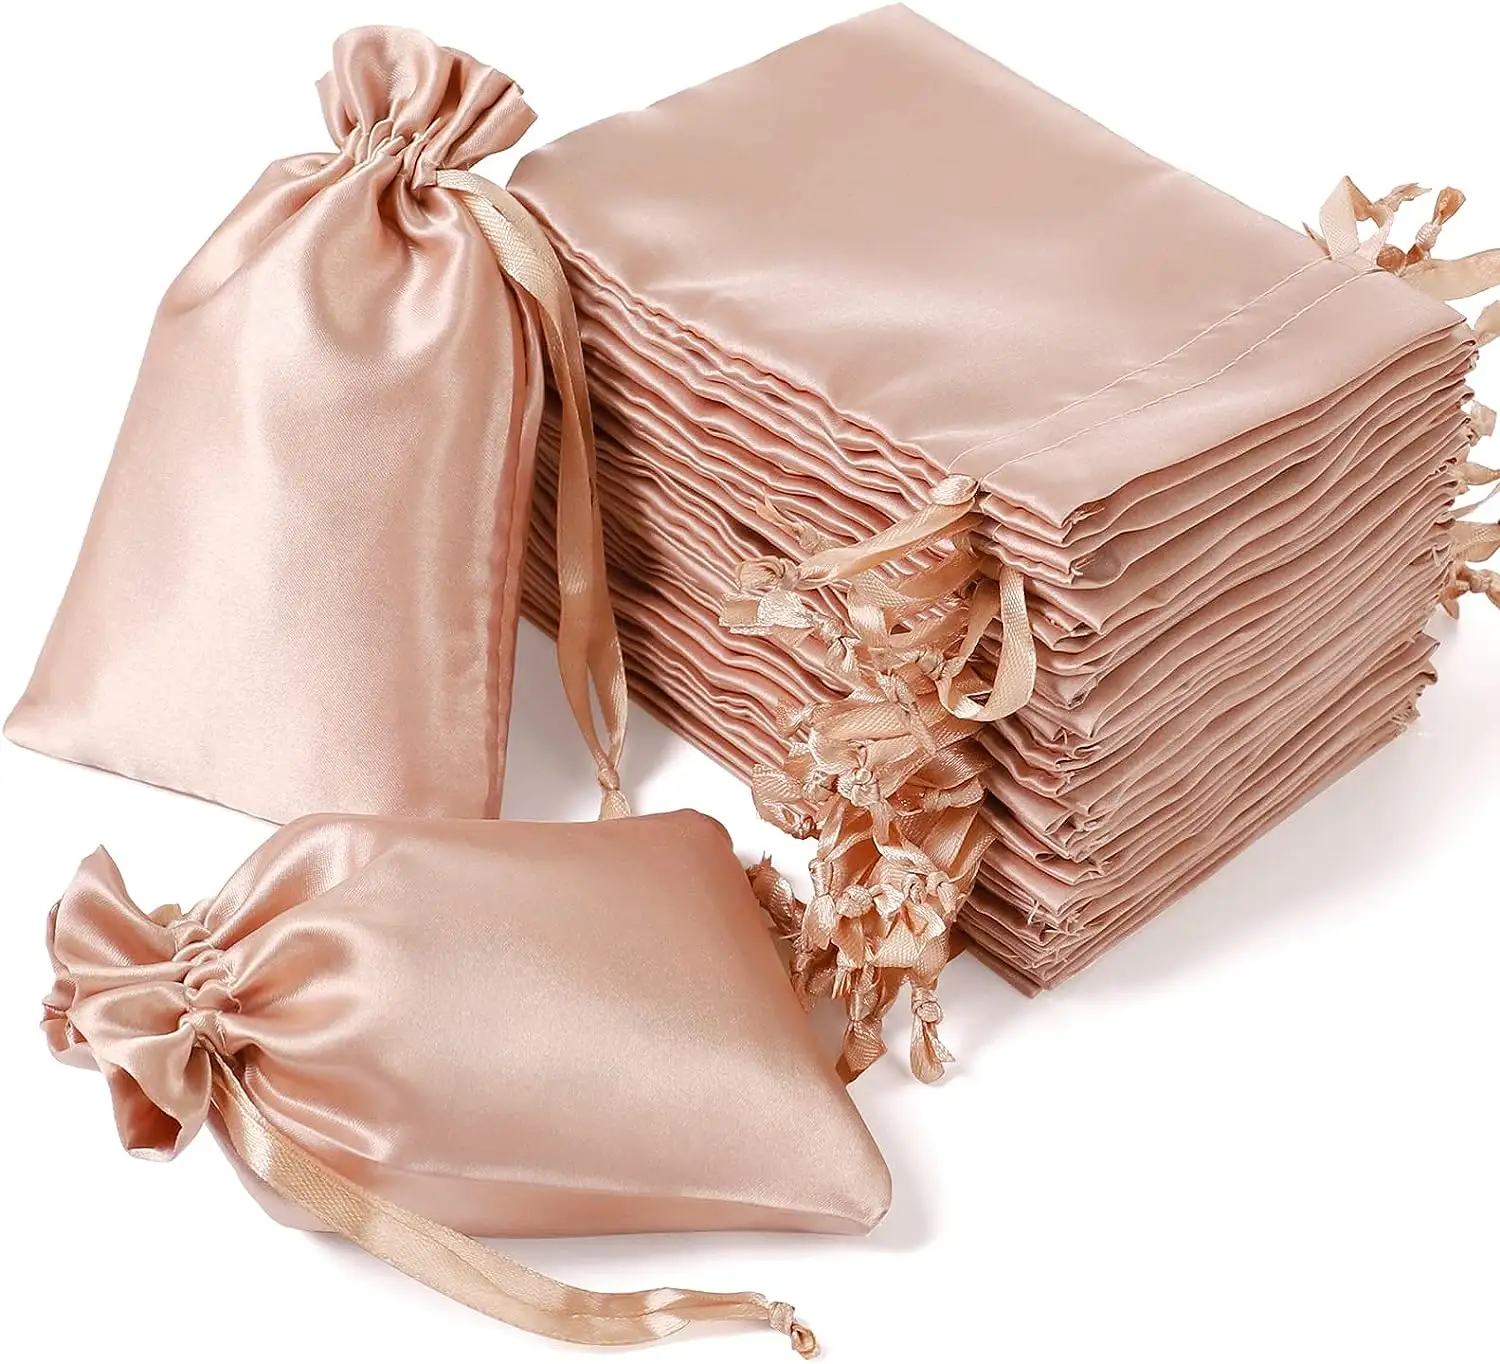 Parrucche di seta di lusso personalizzate che imballano sacchetti di polvere sacchetto regalo con coulisse di qualità per borse di biancheria cosmetica sacchetto di raso per capelli